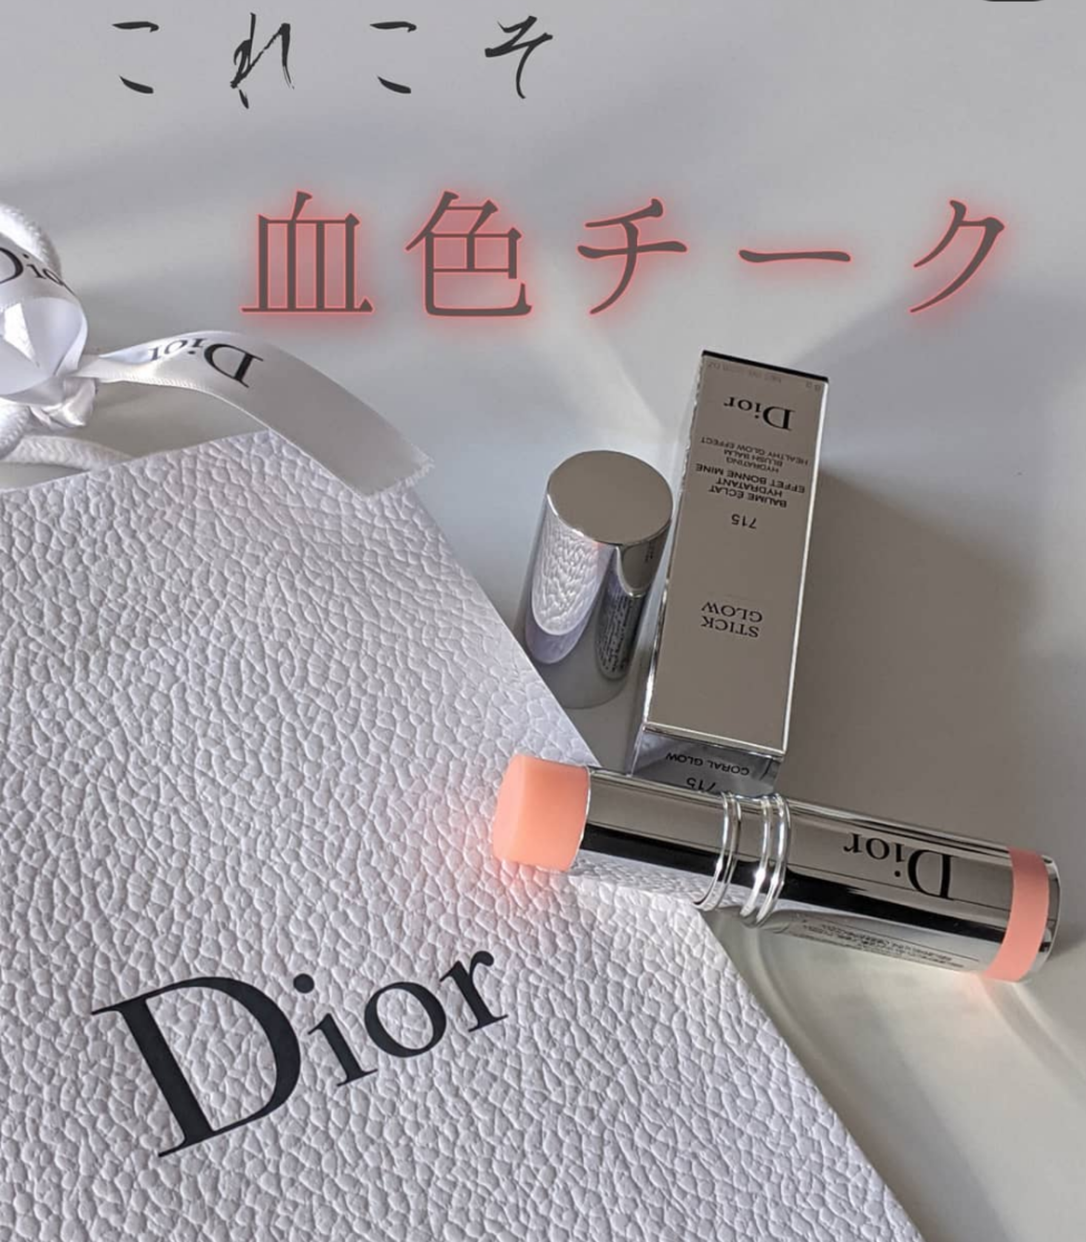 Dior(ディオール) スティック グロウに関するChimachangramさんの口コミ画像1